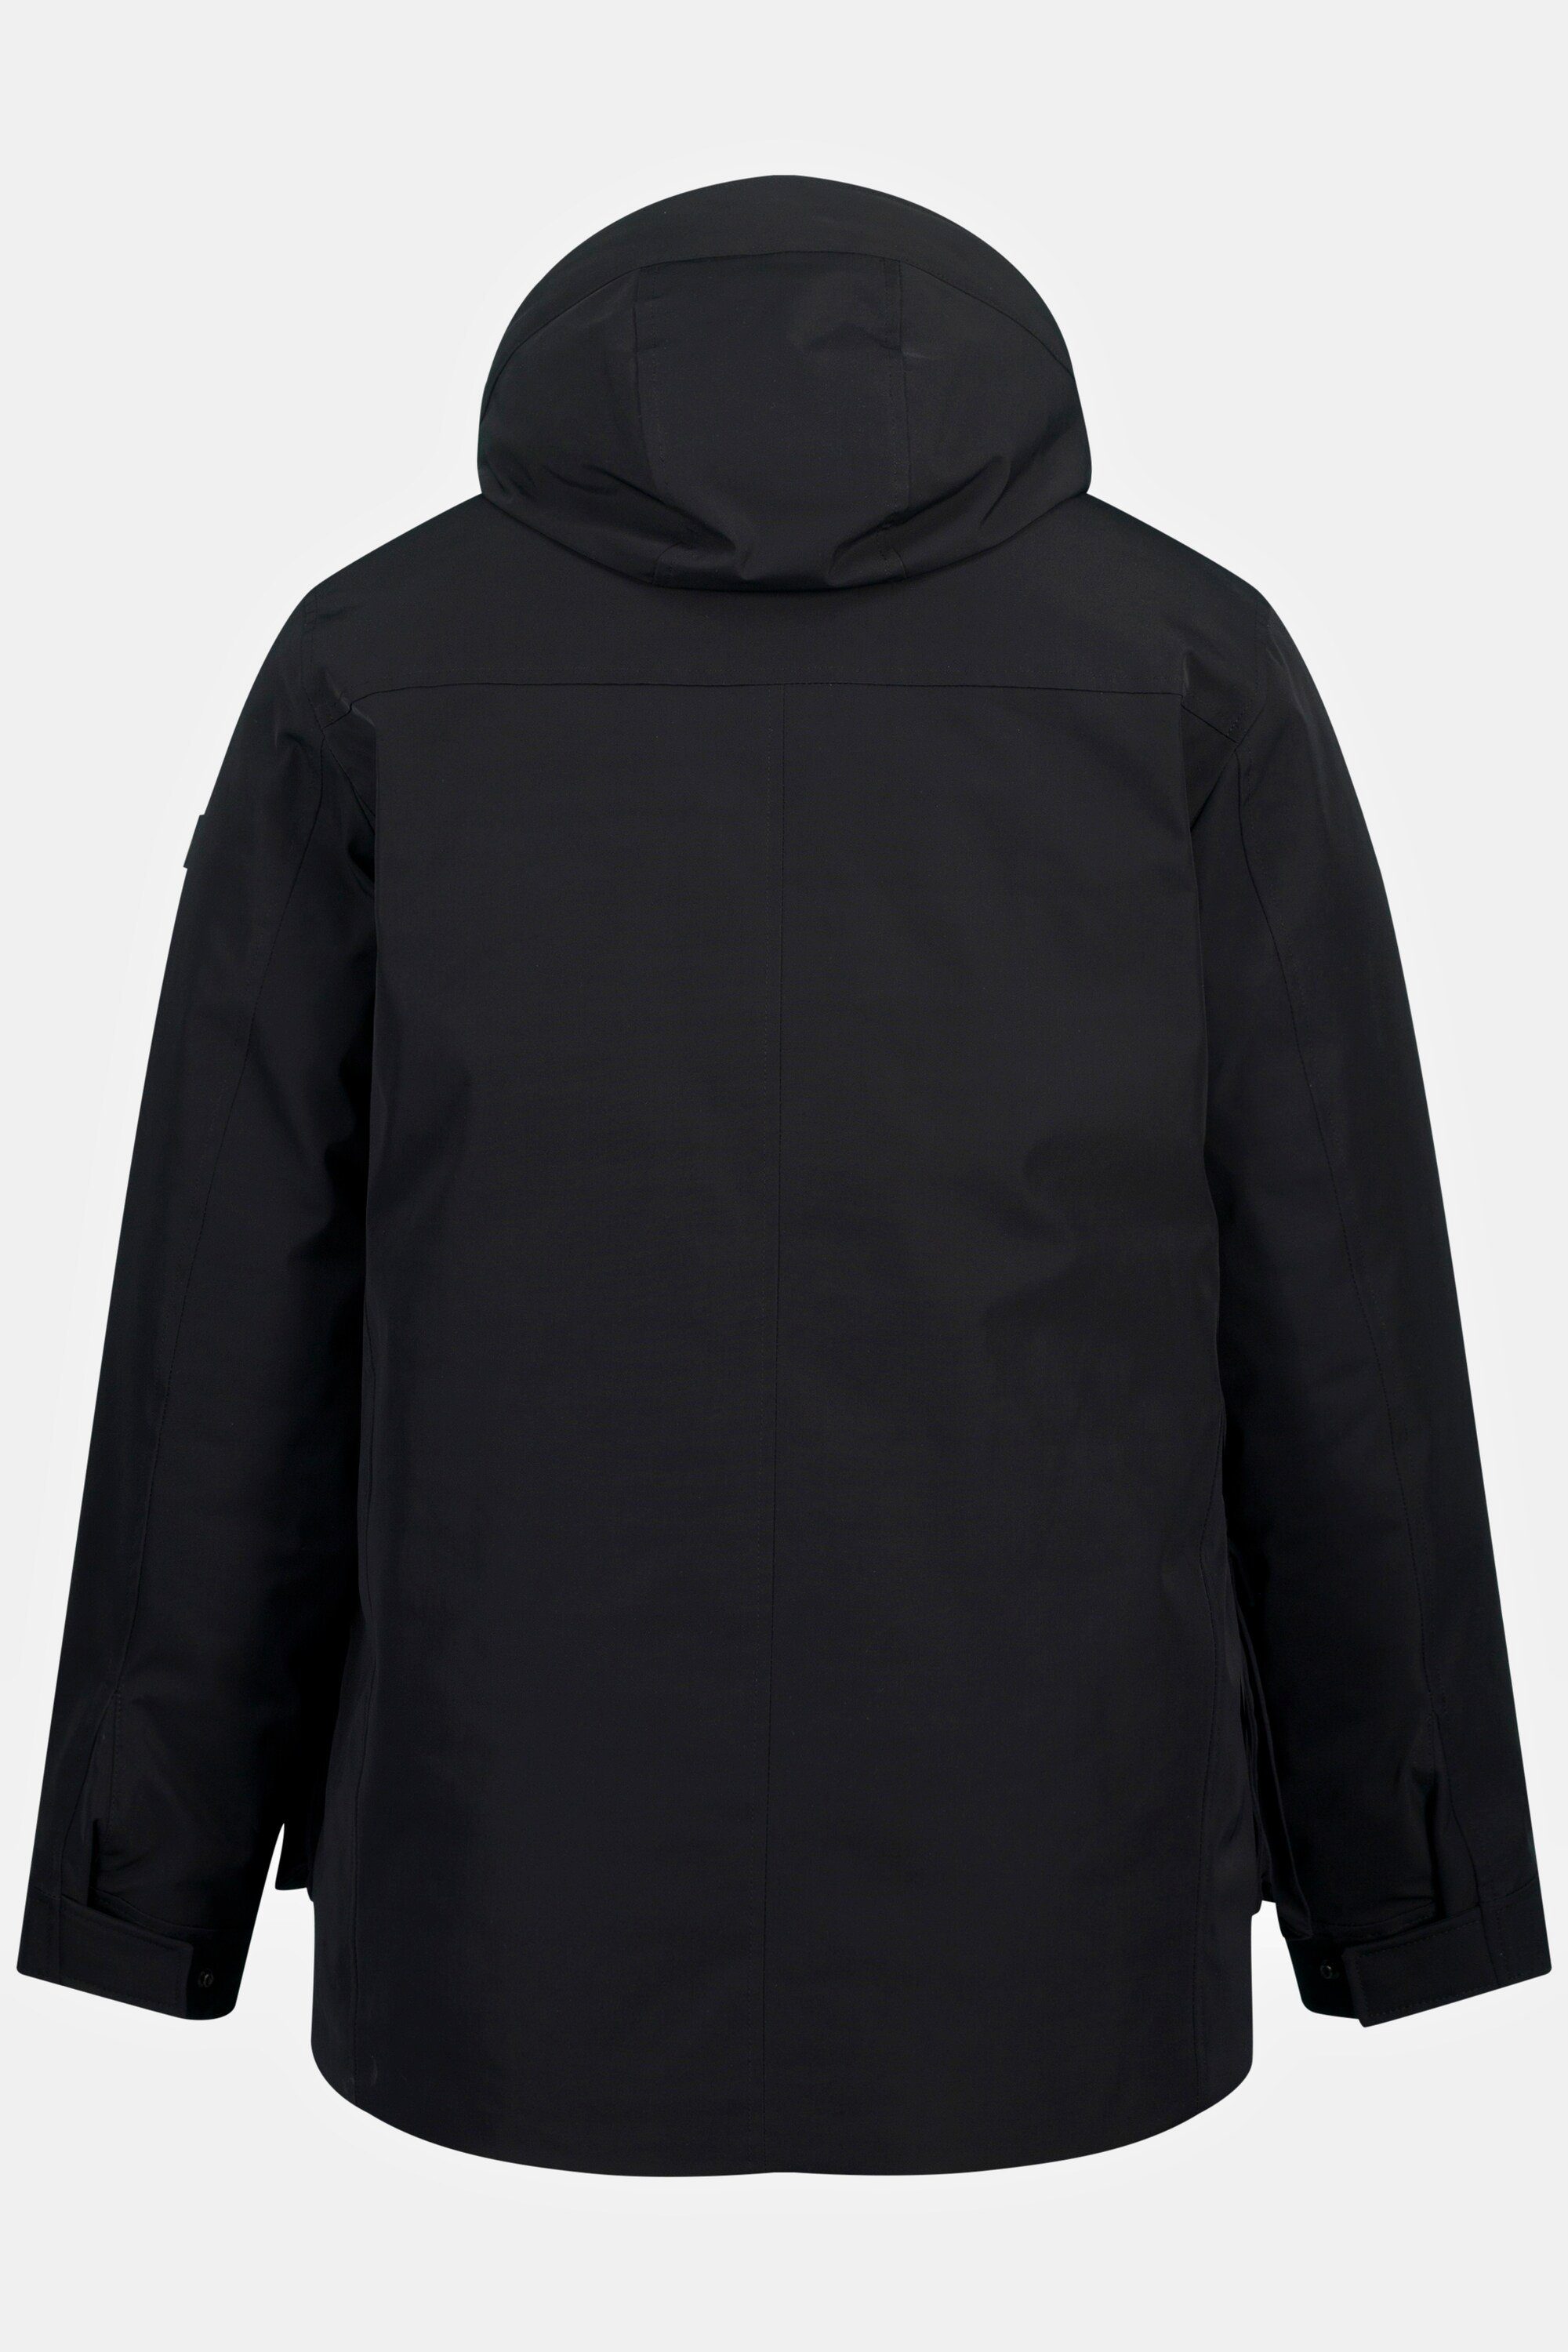 JP1880 Parka Jacke schwarz Outdoor windabweisend wasserabweisend